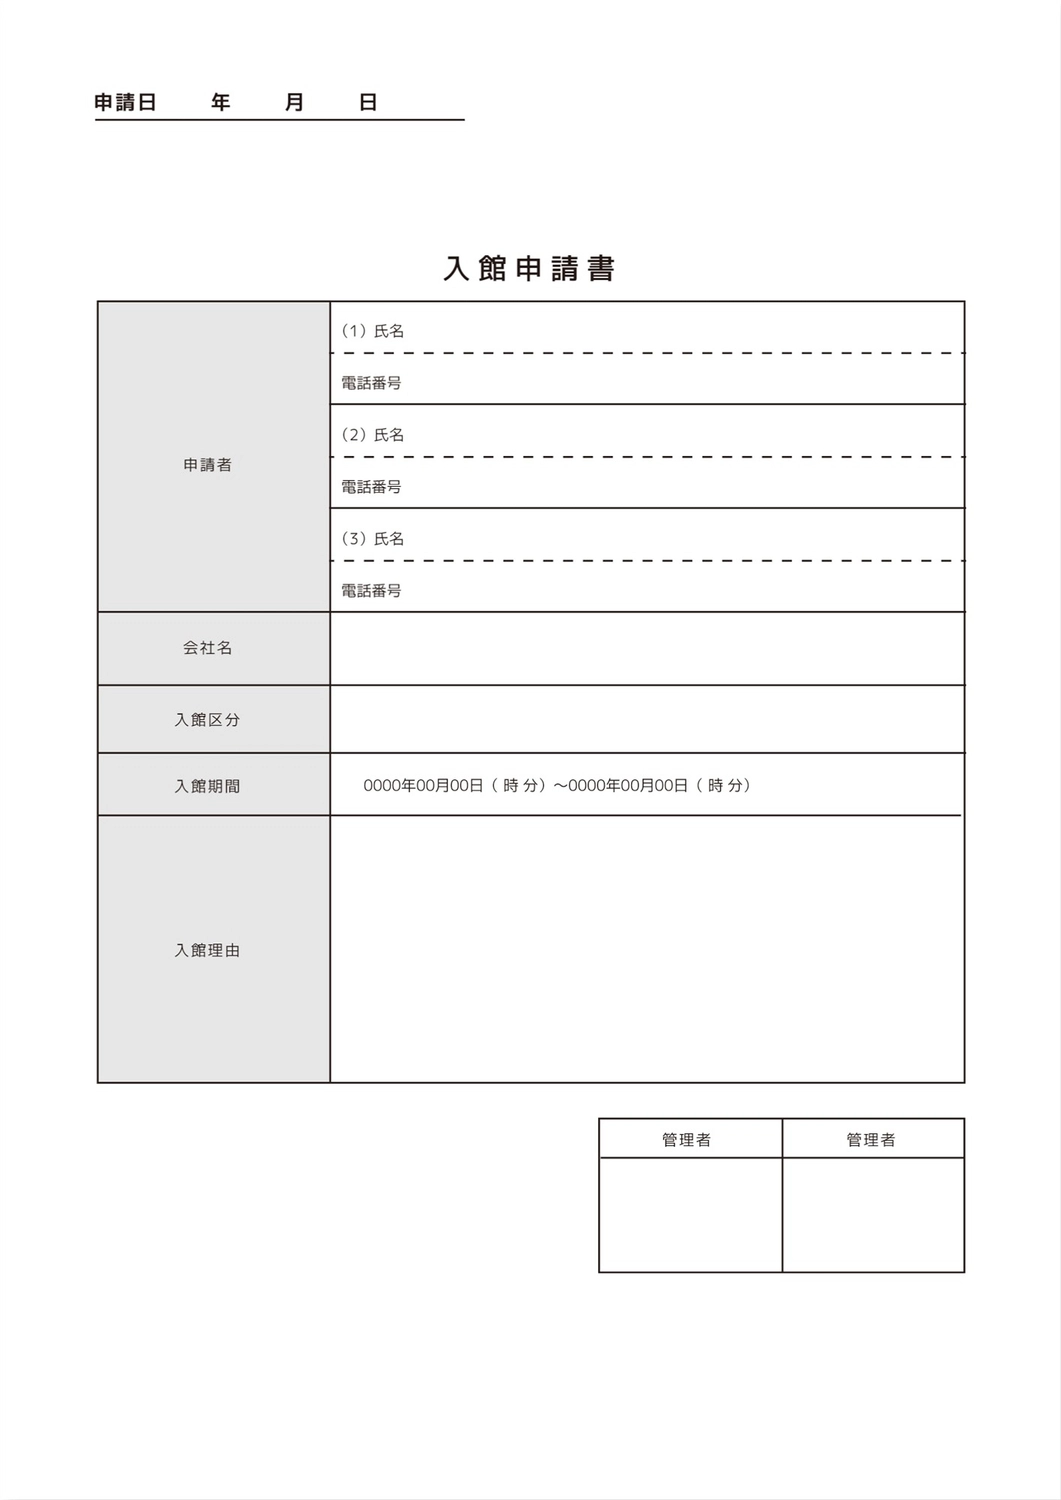 入館申請書テンプレート, 단색, 인쇄, 만들기, A4 문서 템플릿